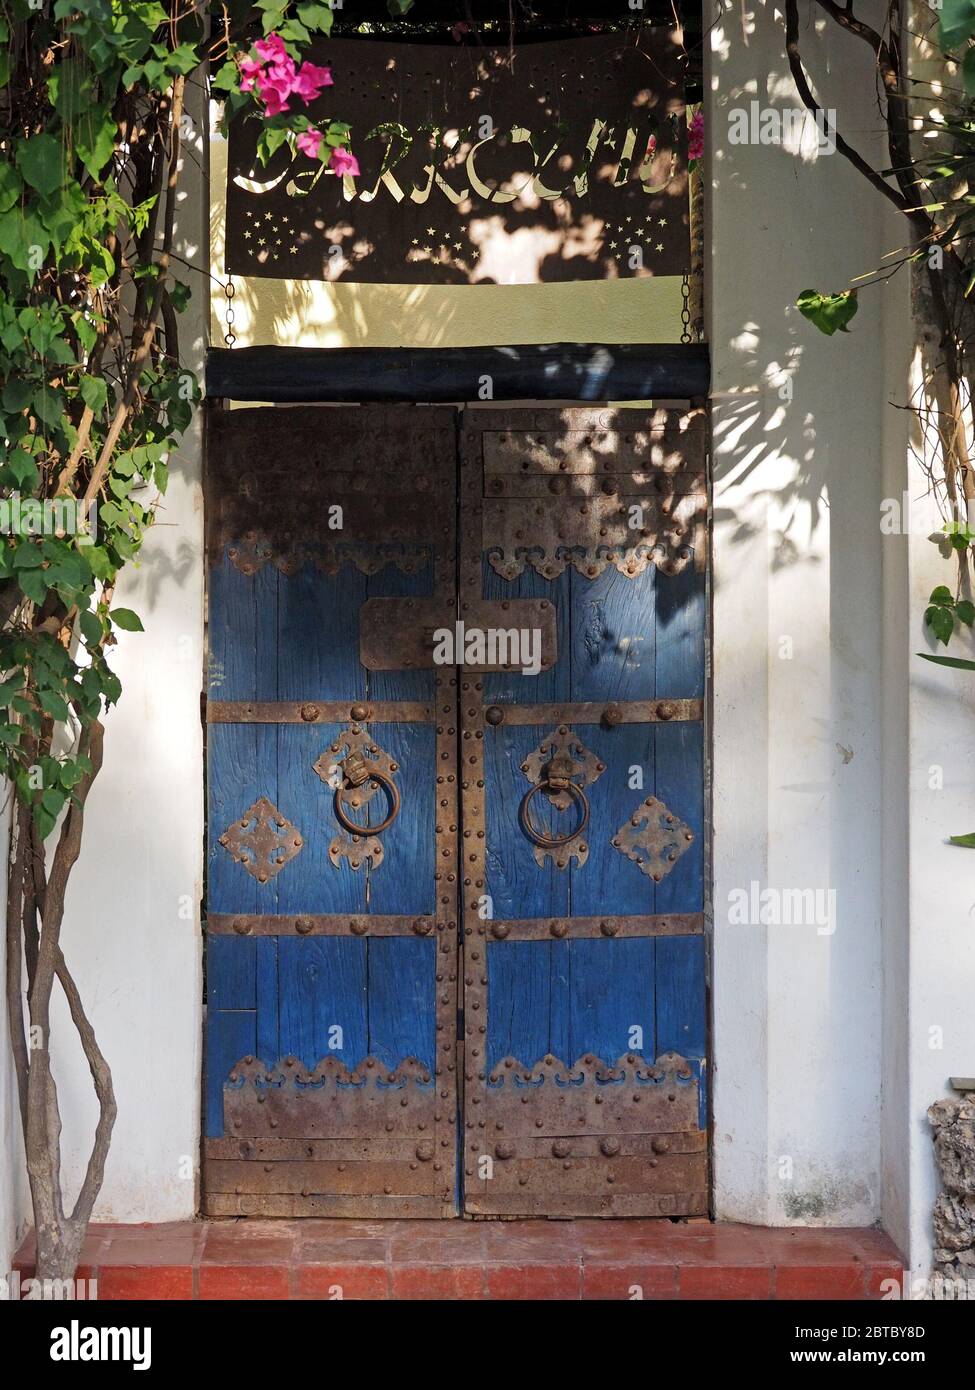 Rostige Metallarbeiten und Türklopfringe auf blau lackierten traditionellen Holz Doppeltür in weiß lackiertem Gebäude in Malindi, an der Küste Kenias, Afrika Stockfoto